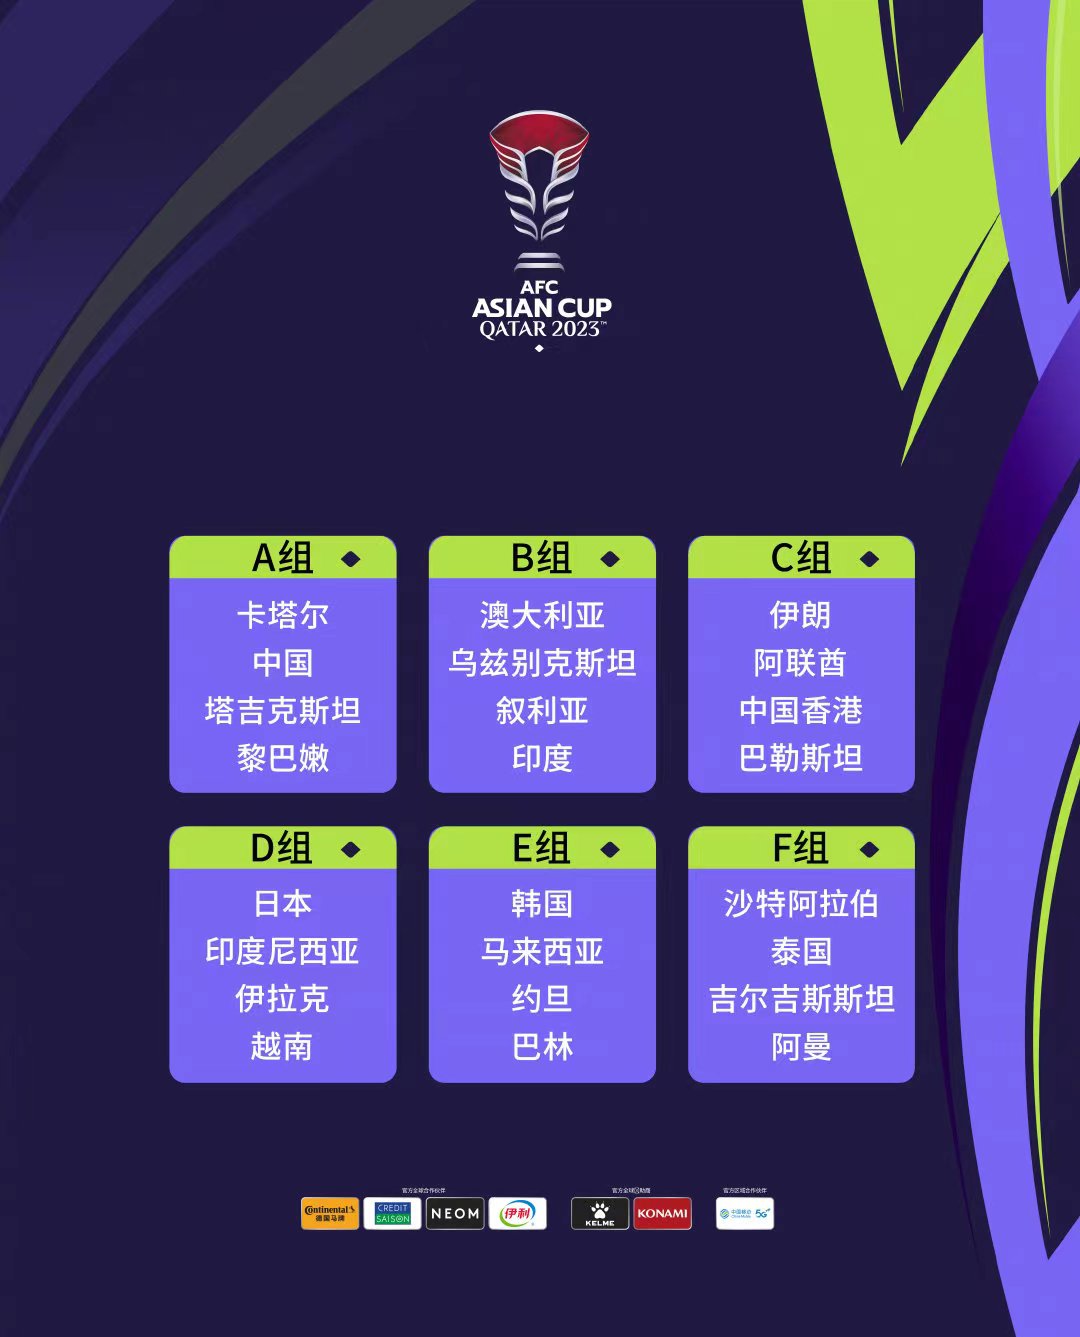 亚洲杯分组—图片源自AFC官方微博.jpg